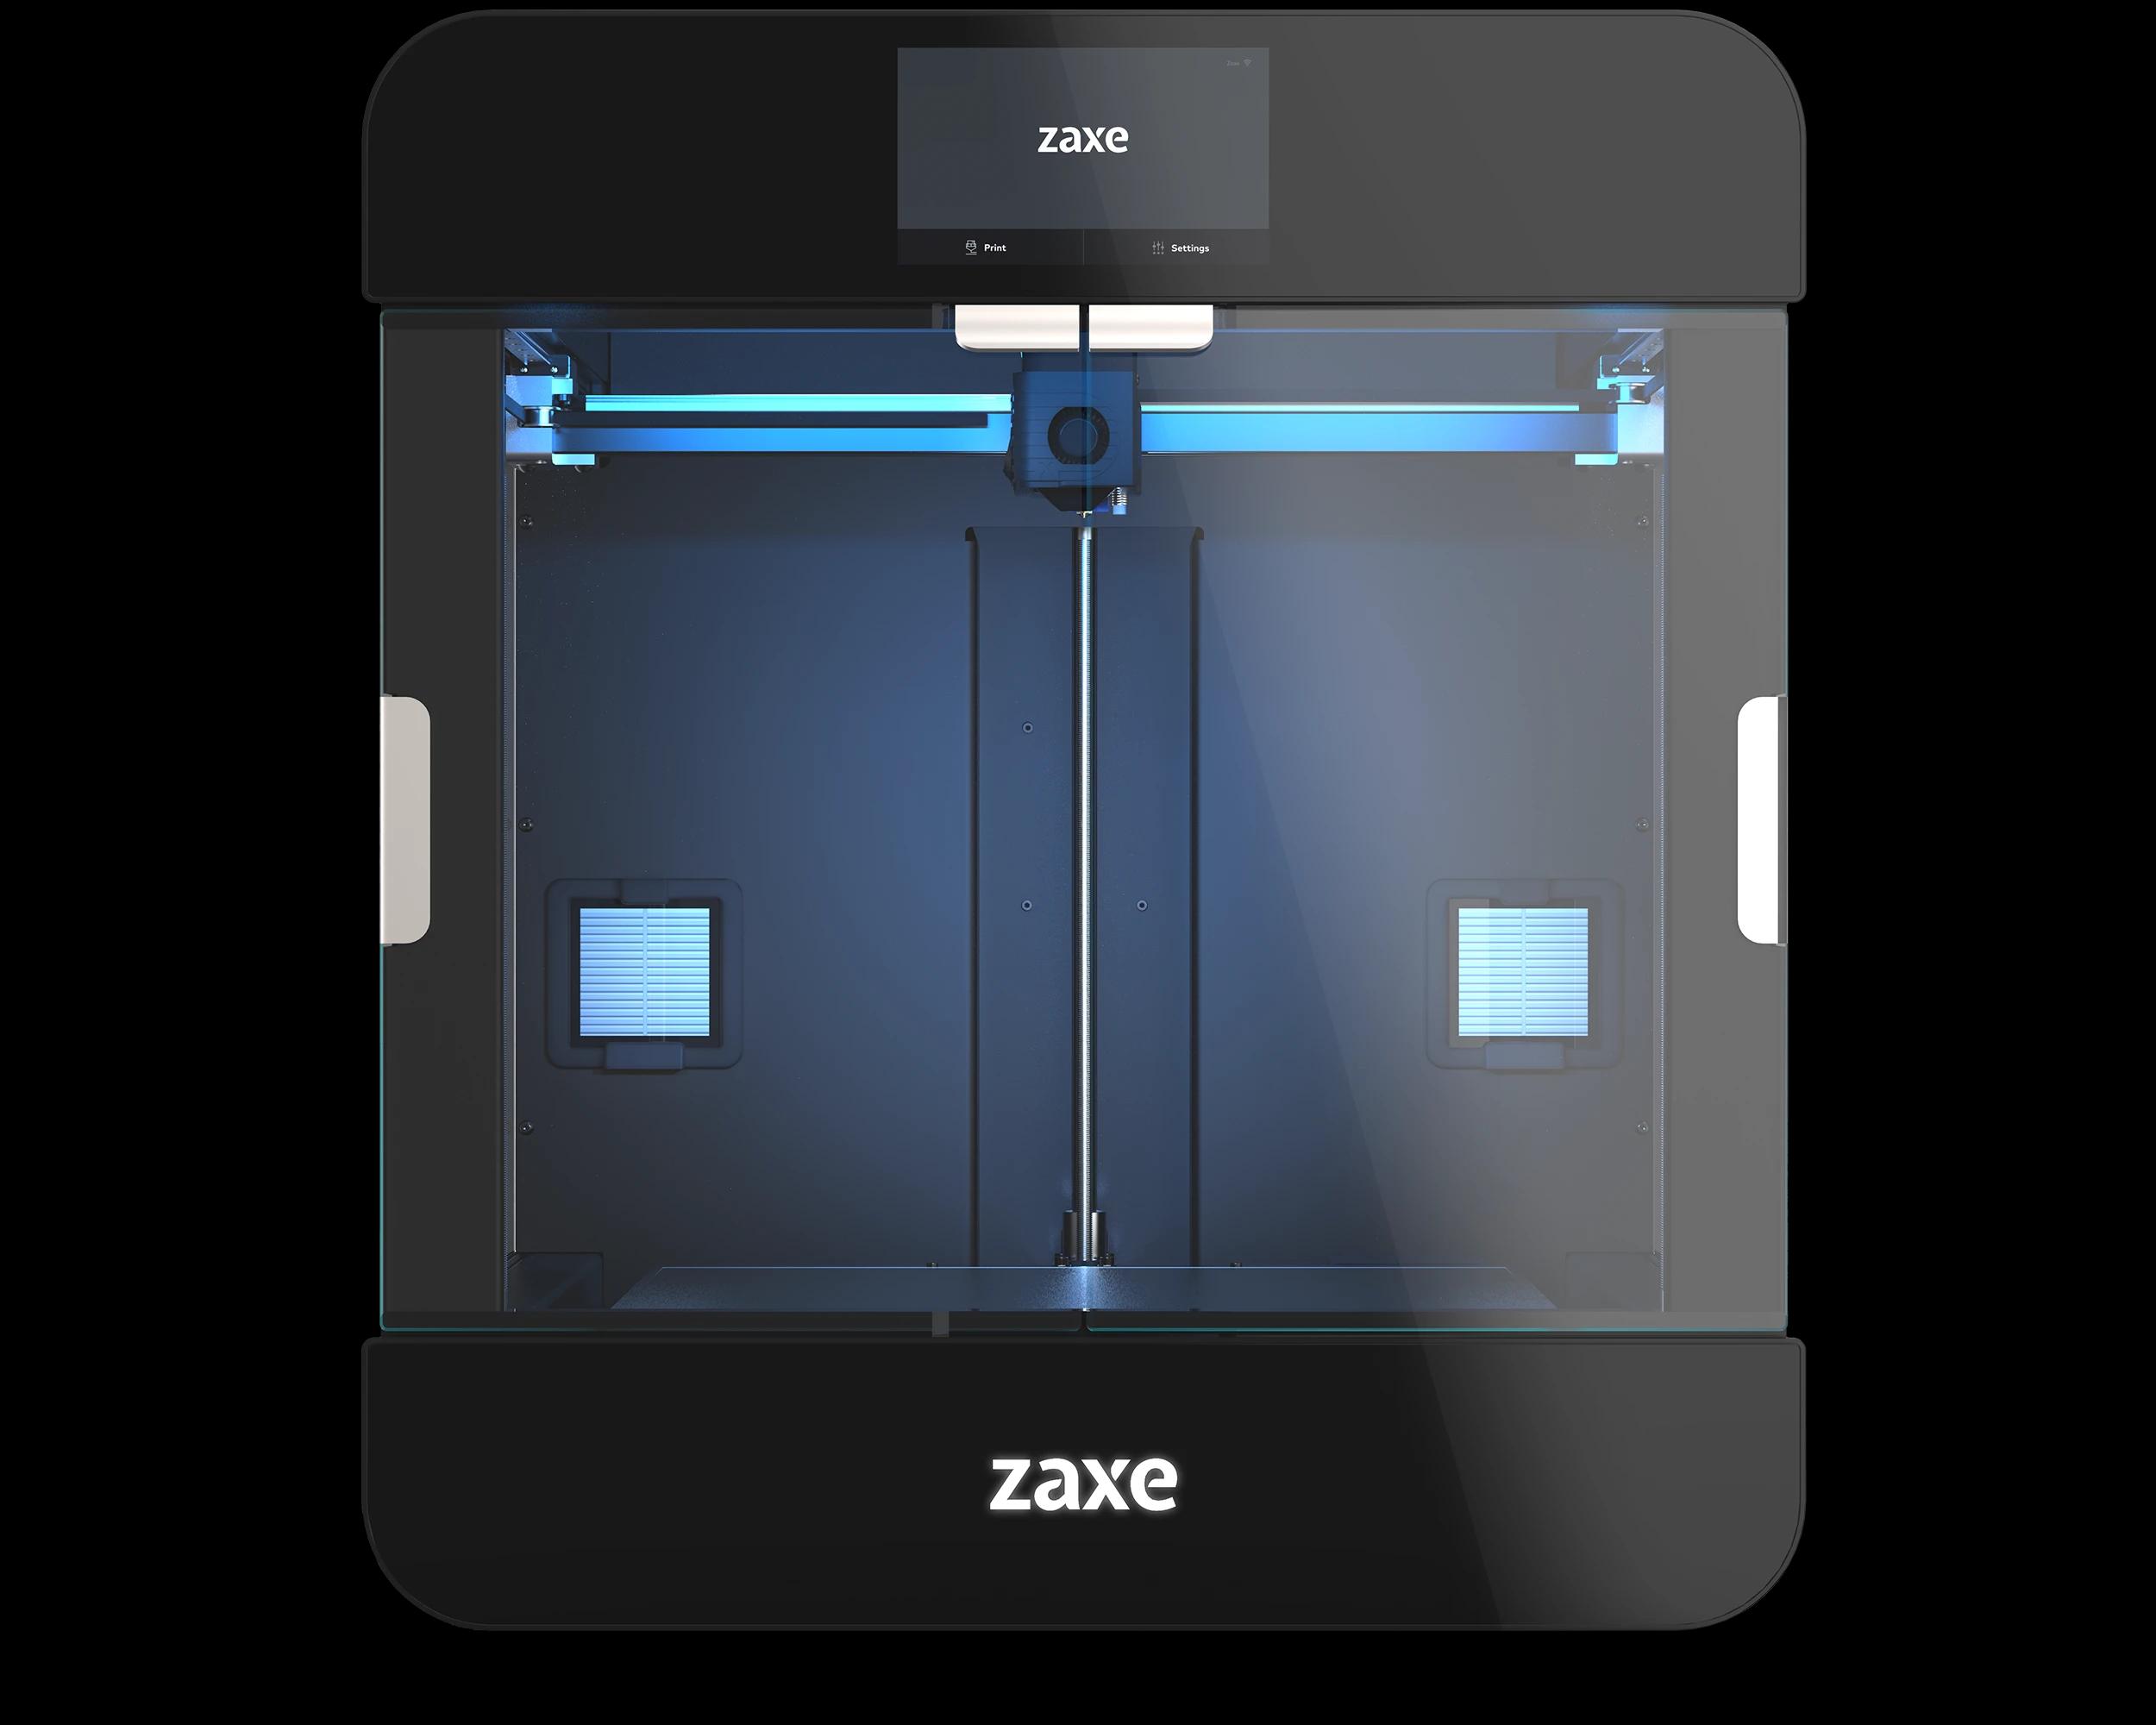 Zaxe Z3S 3D Printer